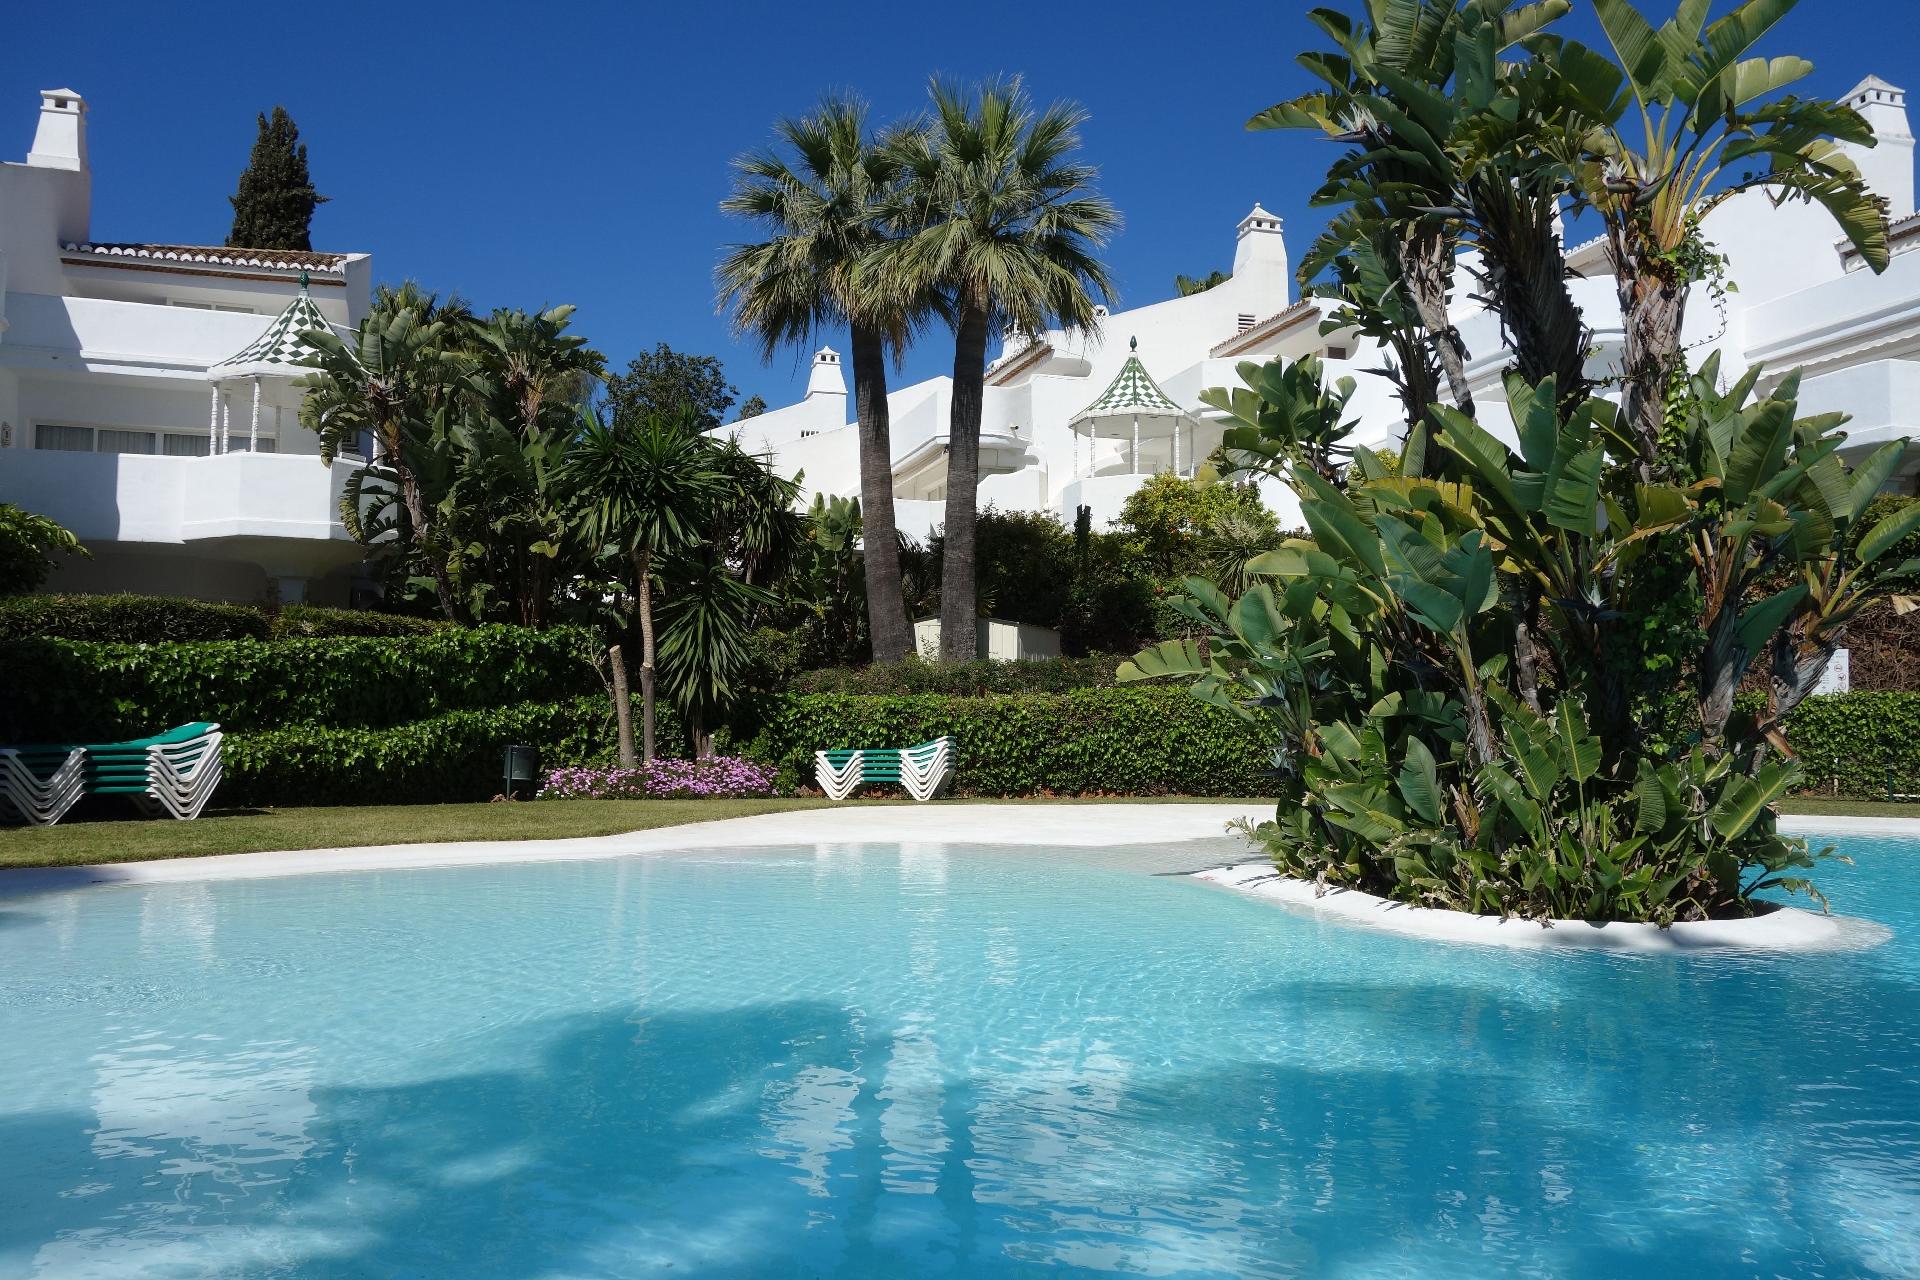 Wunderschönes Ferienhaus in Marbella mit Klei Ferienhaus in Spanien